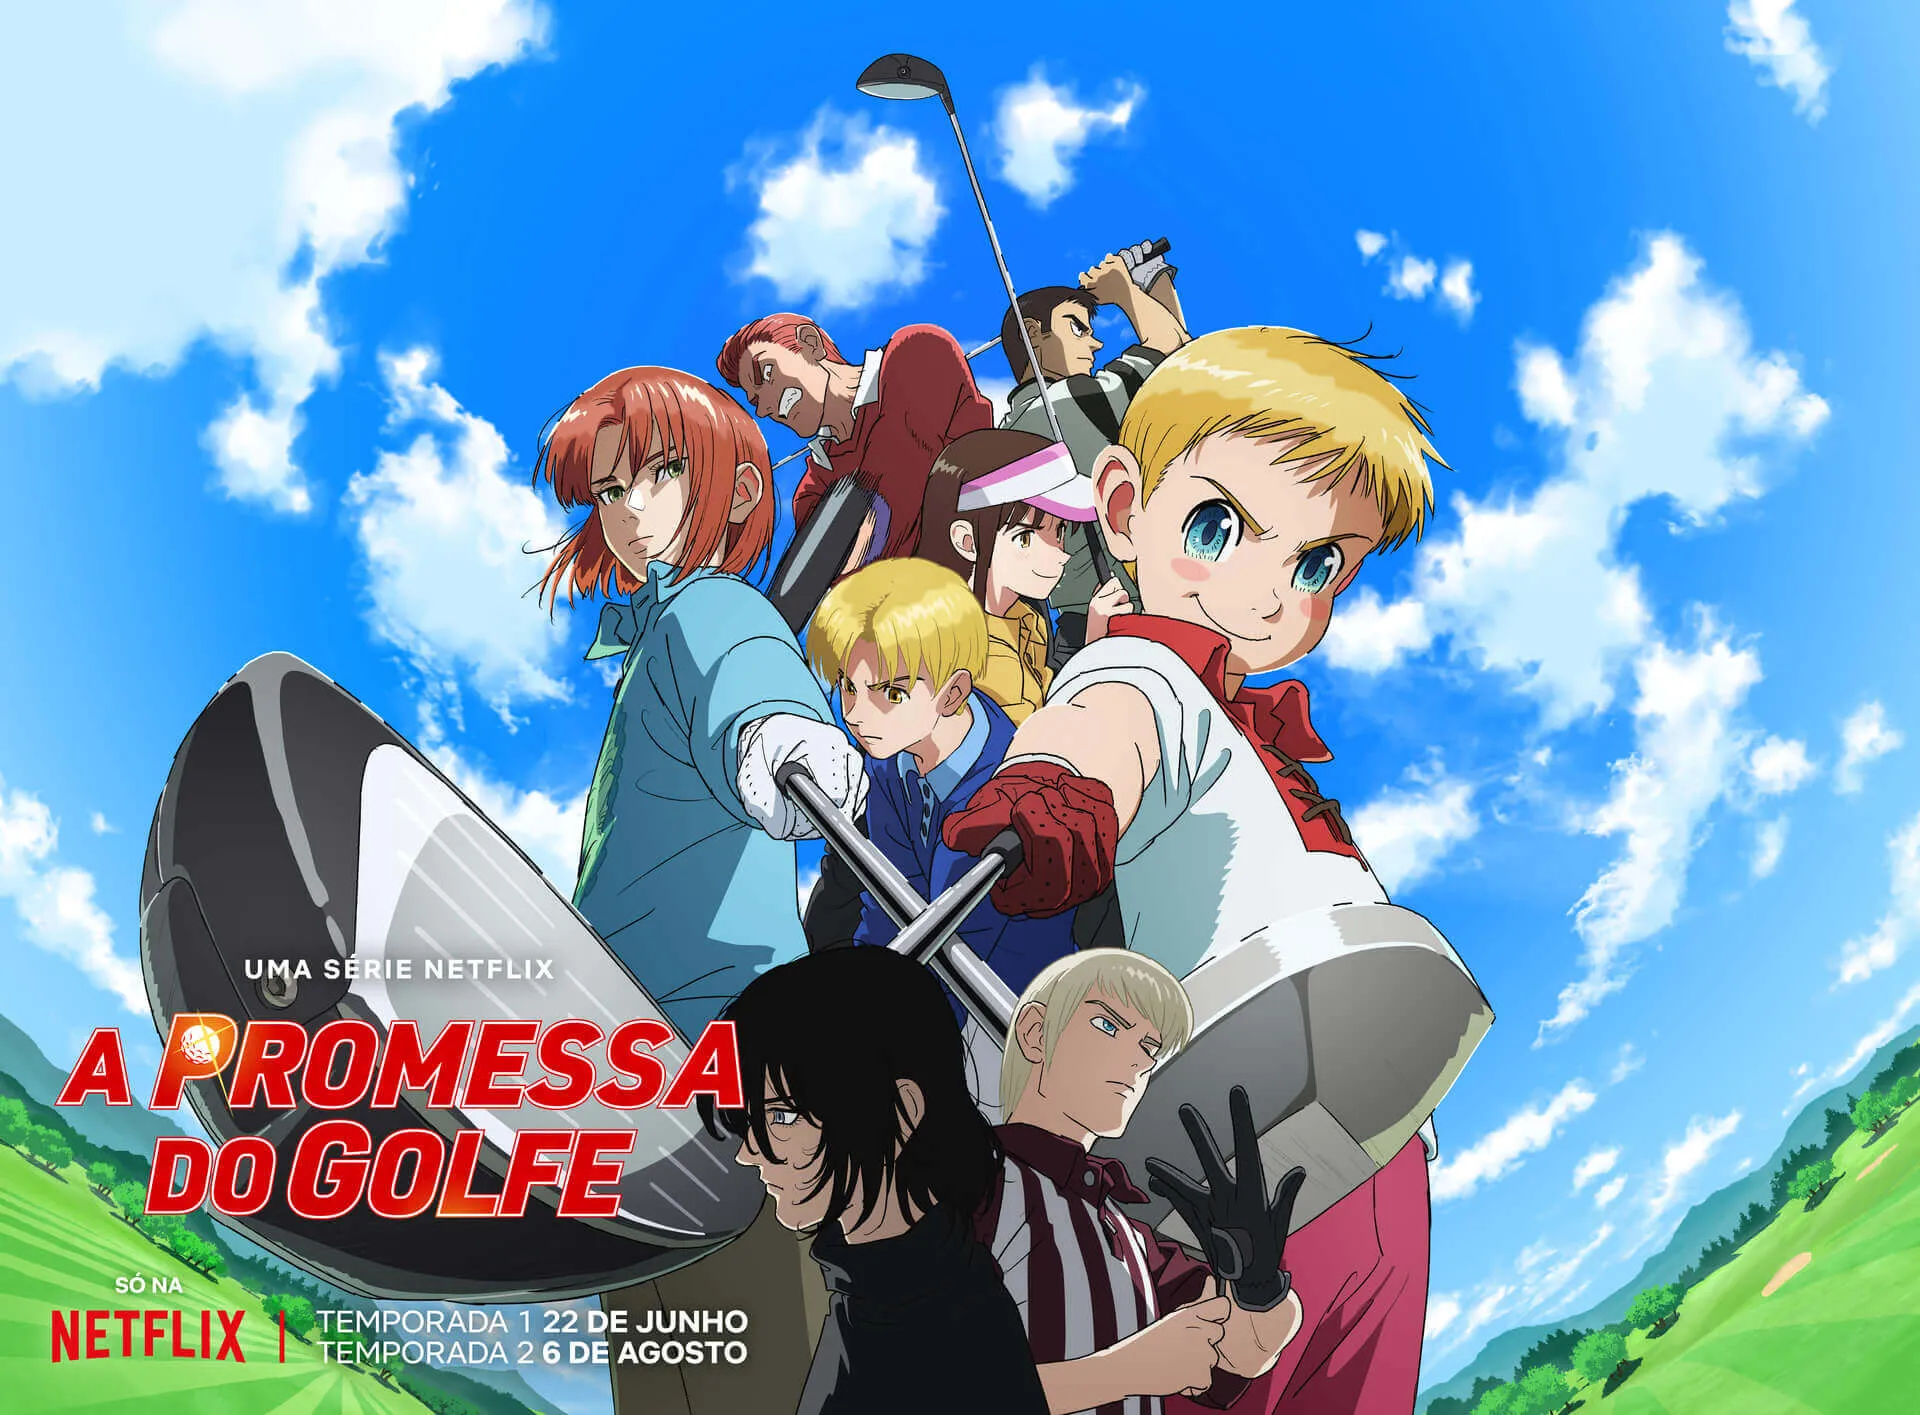 Capa do anime Rising Impact mostrando um grupo de personagens segurando tacos de golfe